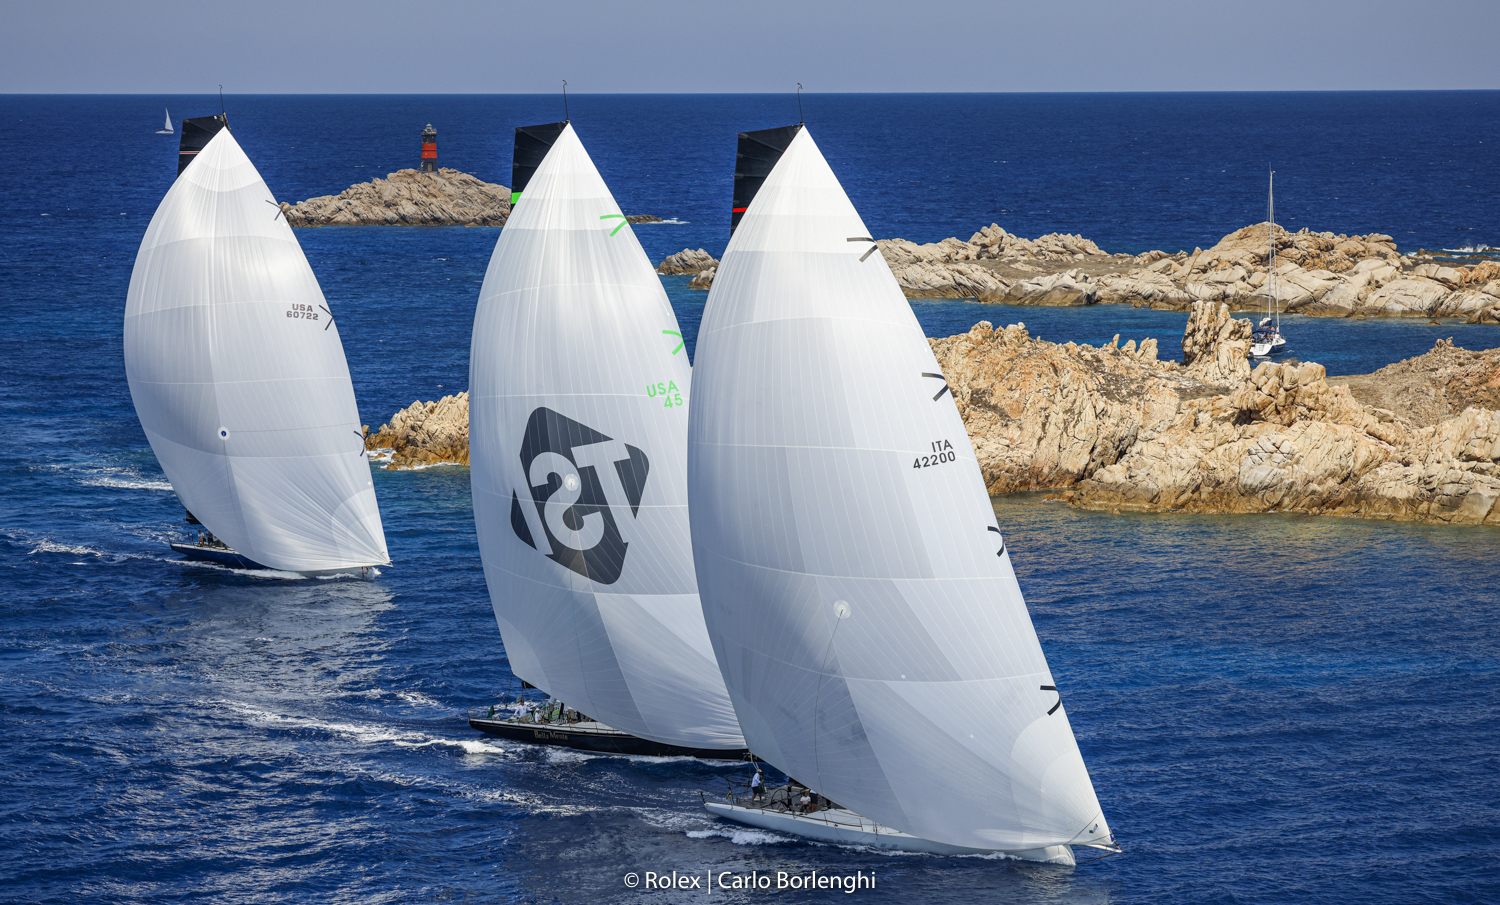 Ottimo avvio per la 31^ edizione della Maxi Yacht Rolex Cup - NEWS - Yacht Club Costa Smeralda